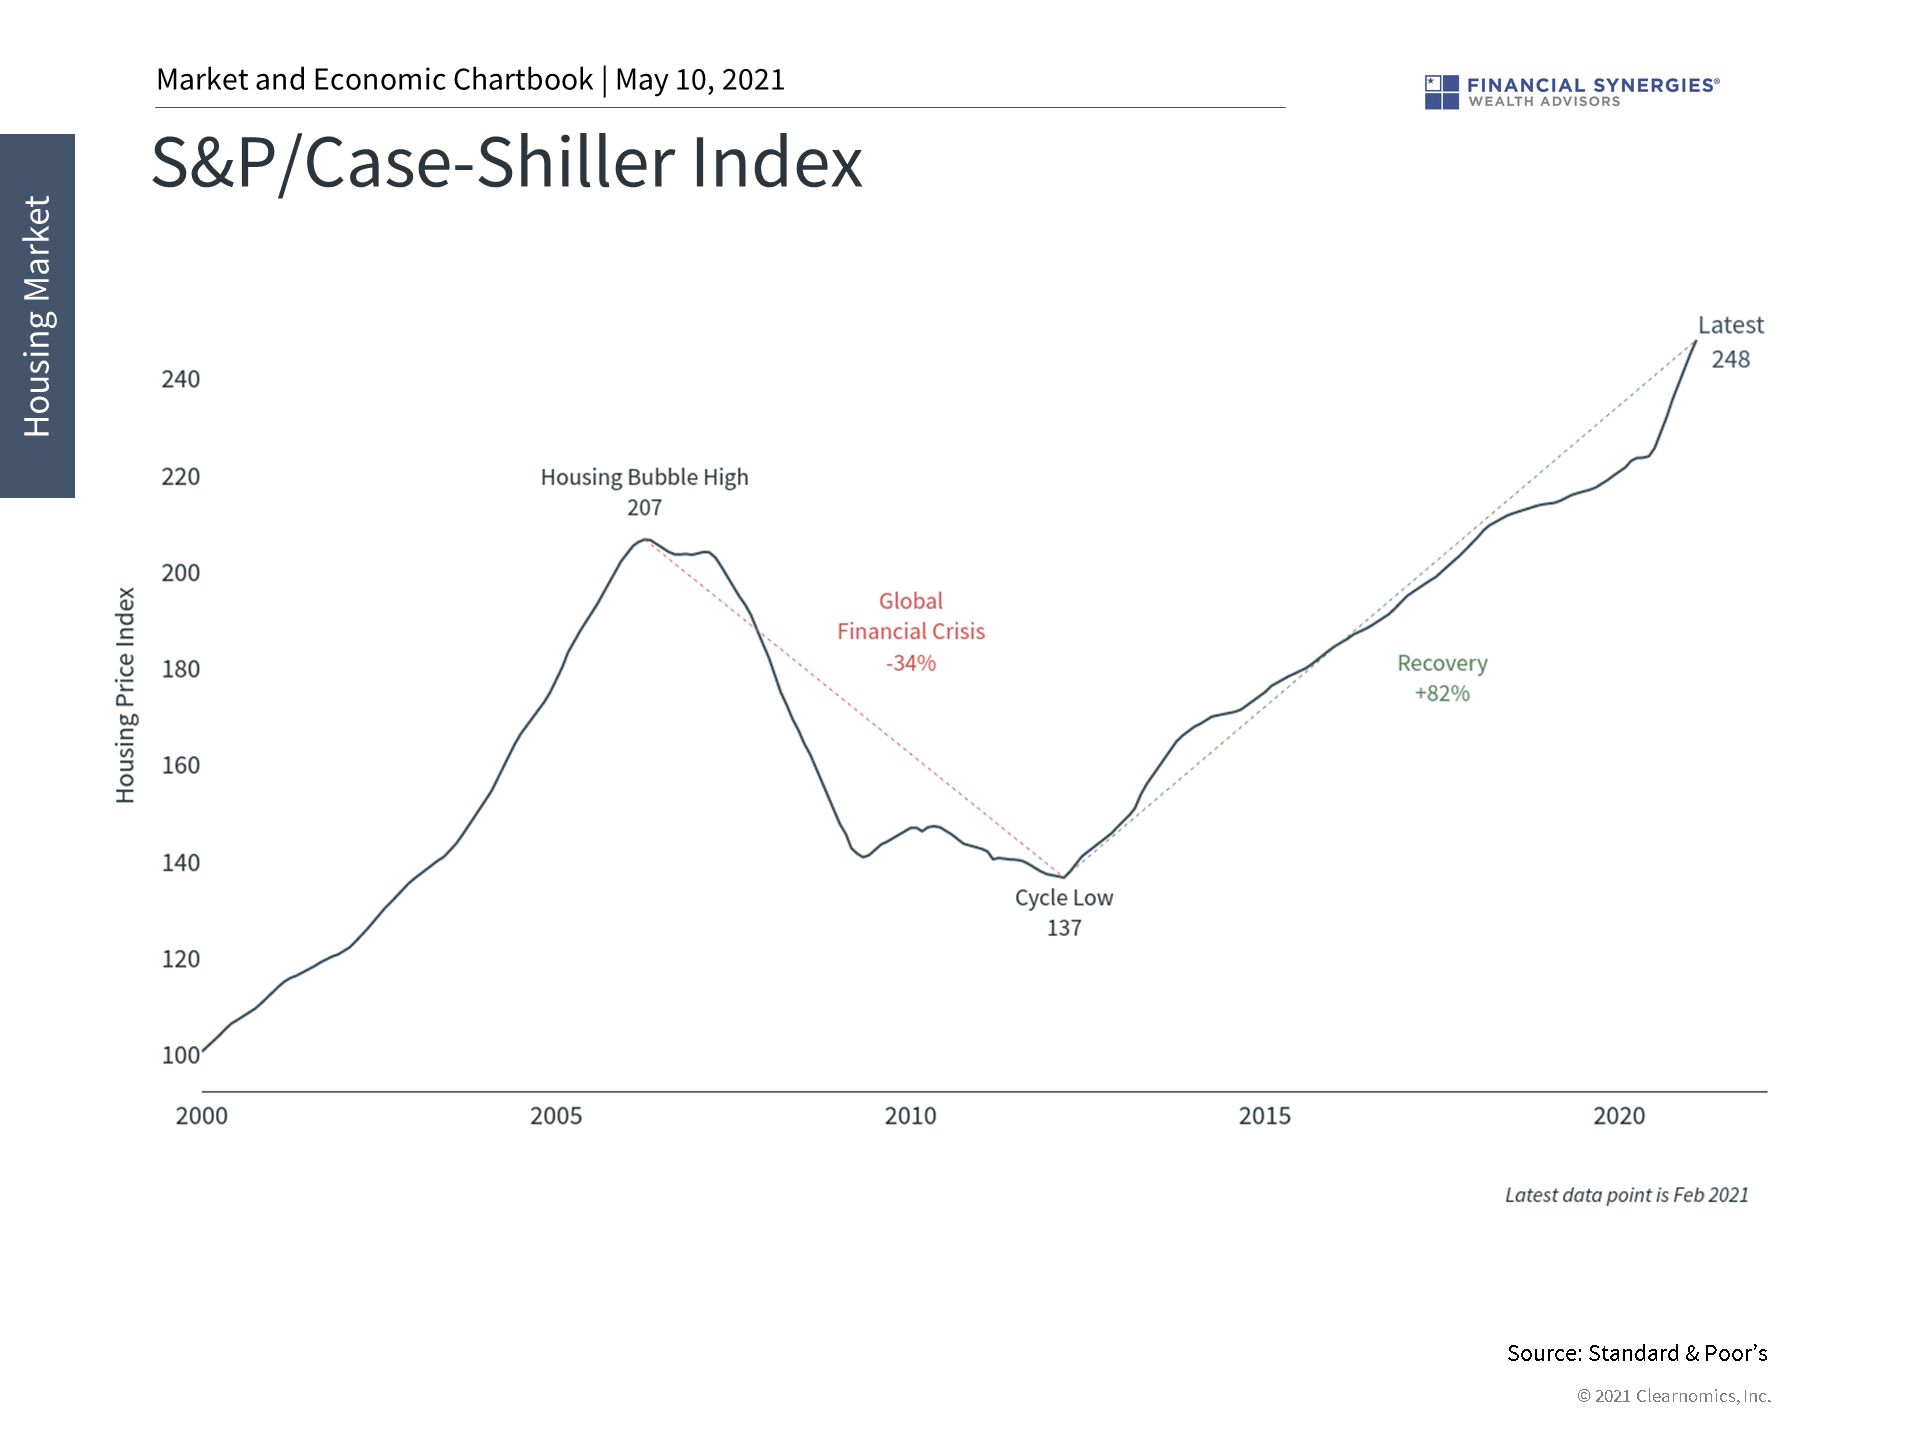 case-shiller index